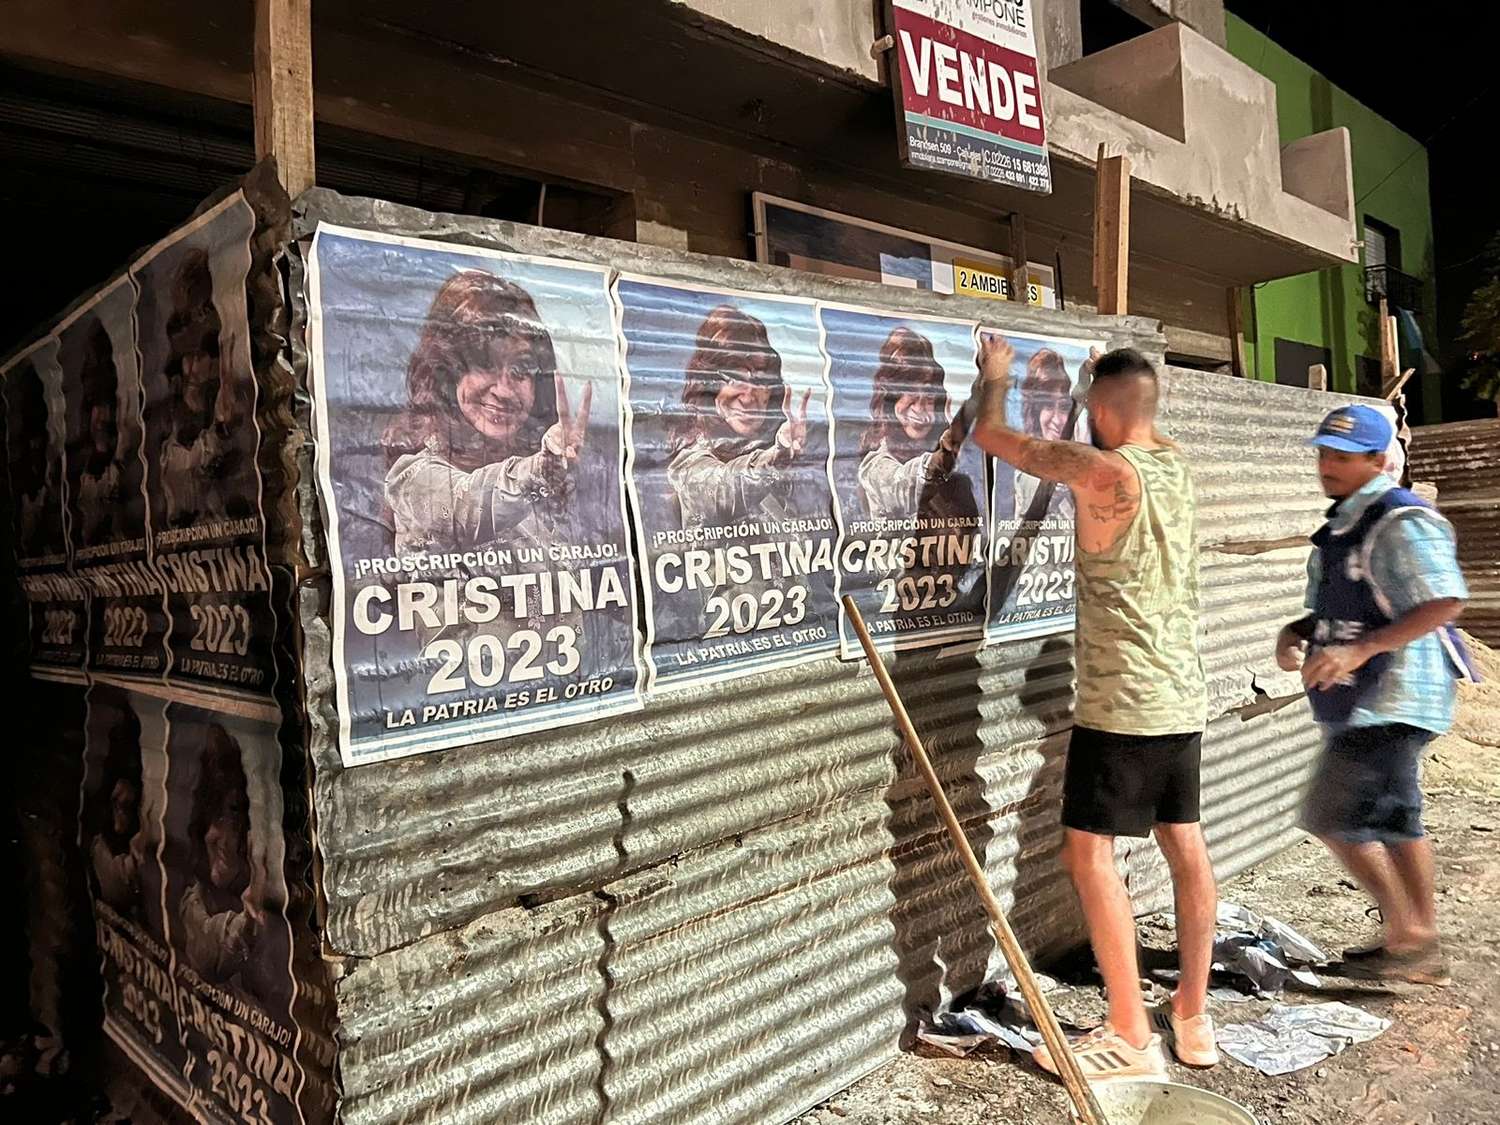 ¡Proscripción un carajo!: Los carteles callejeros que quieren impulsar la candidatura 2023 de Cristina Kirchner